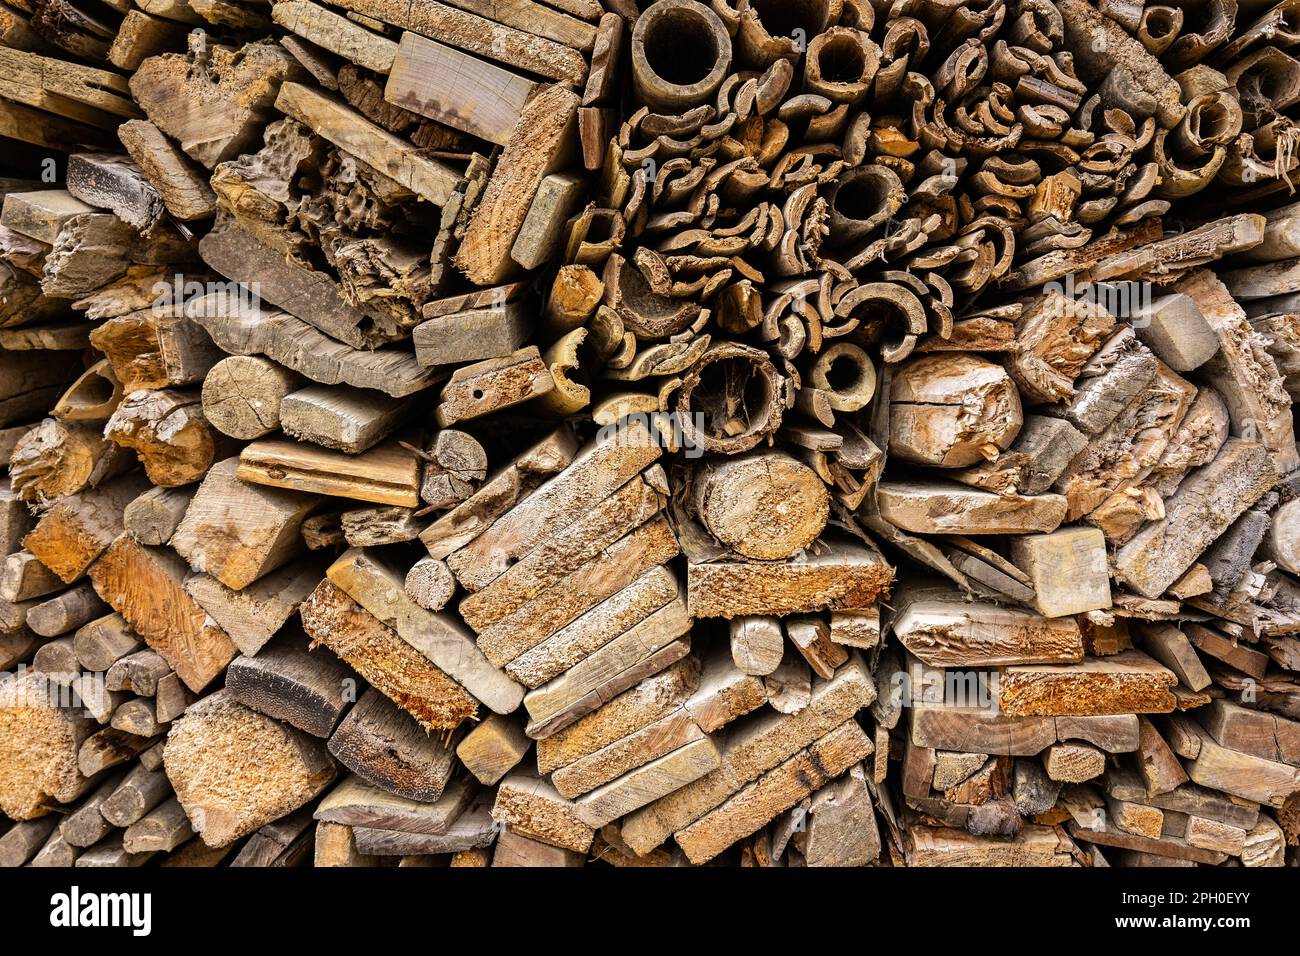 Hintergrund von gestapelten Holzbrettern unterschiedlicher Formen. Vollständige Oberflächenstruktur der Endstücke von Holzstücken in Brauntönen. Stockfoto